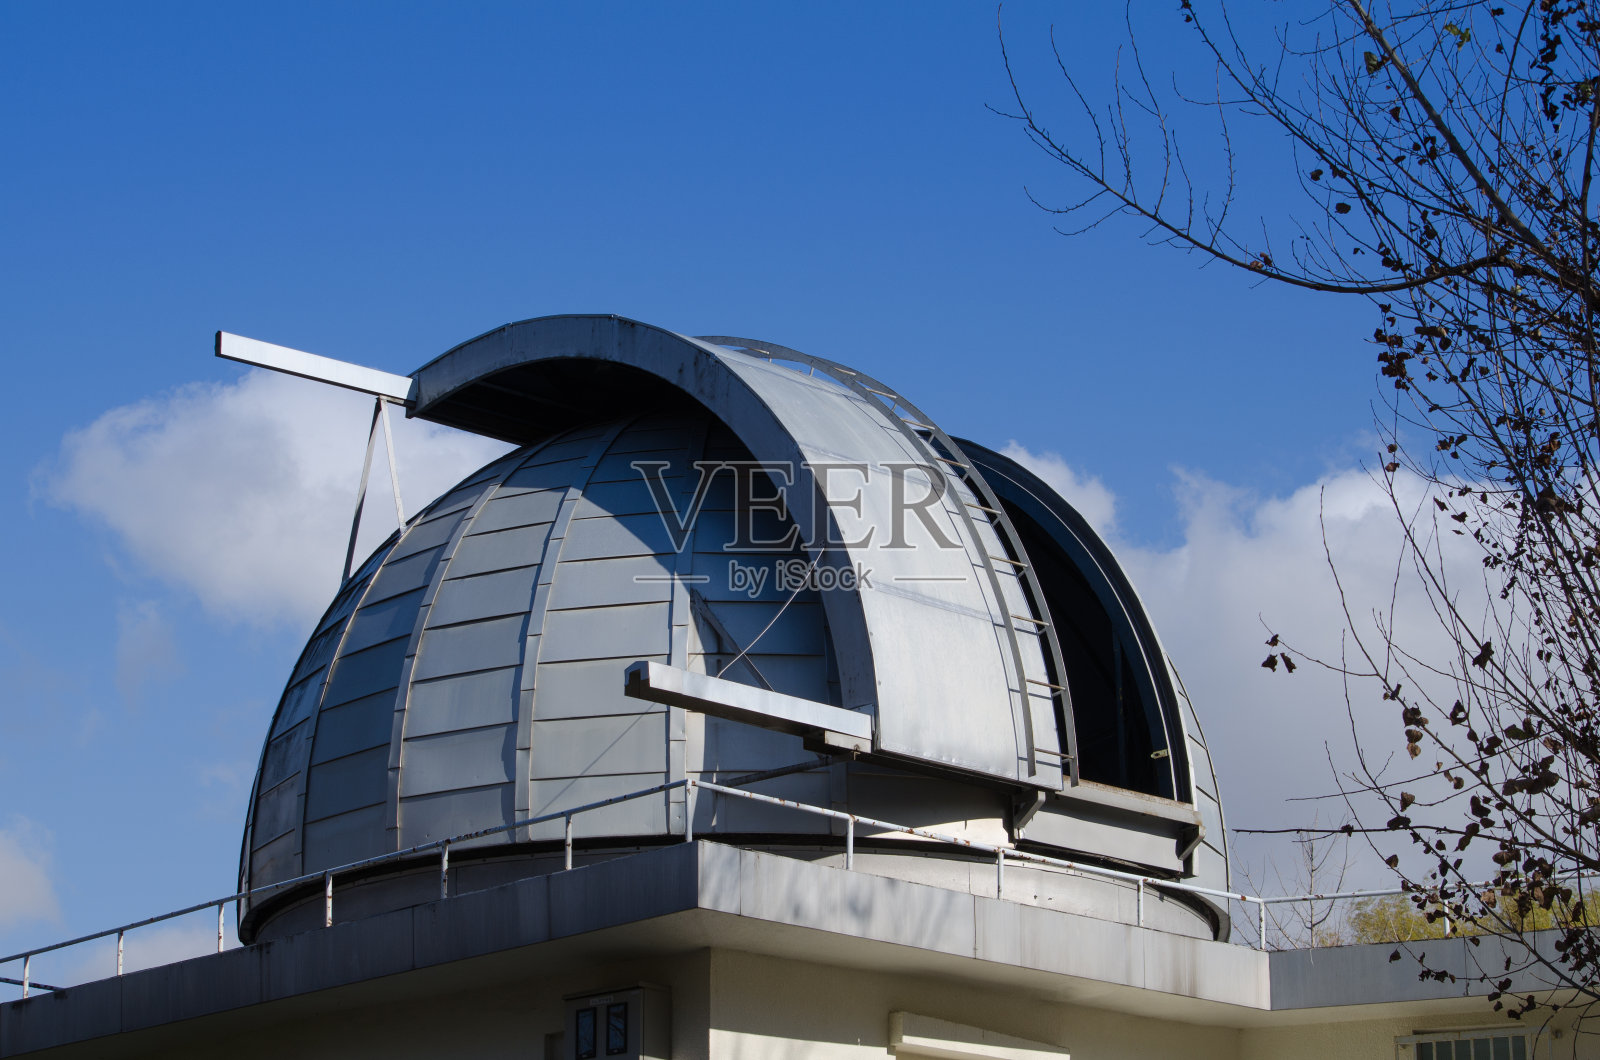 札幌市天文台的风景照片摄影图片